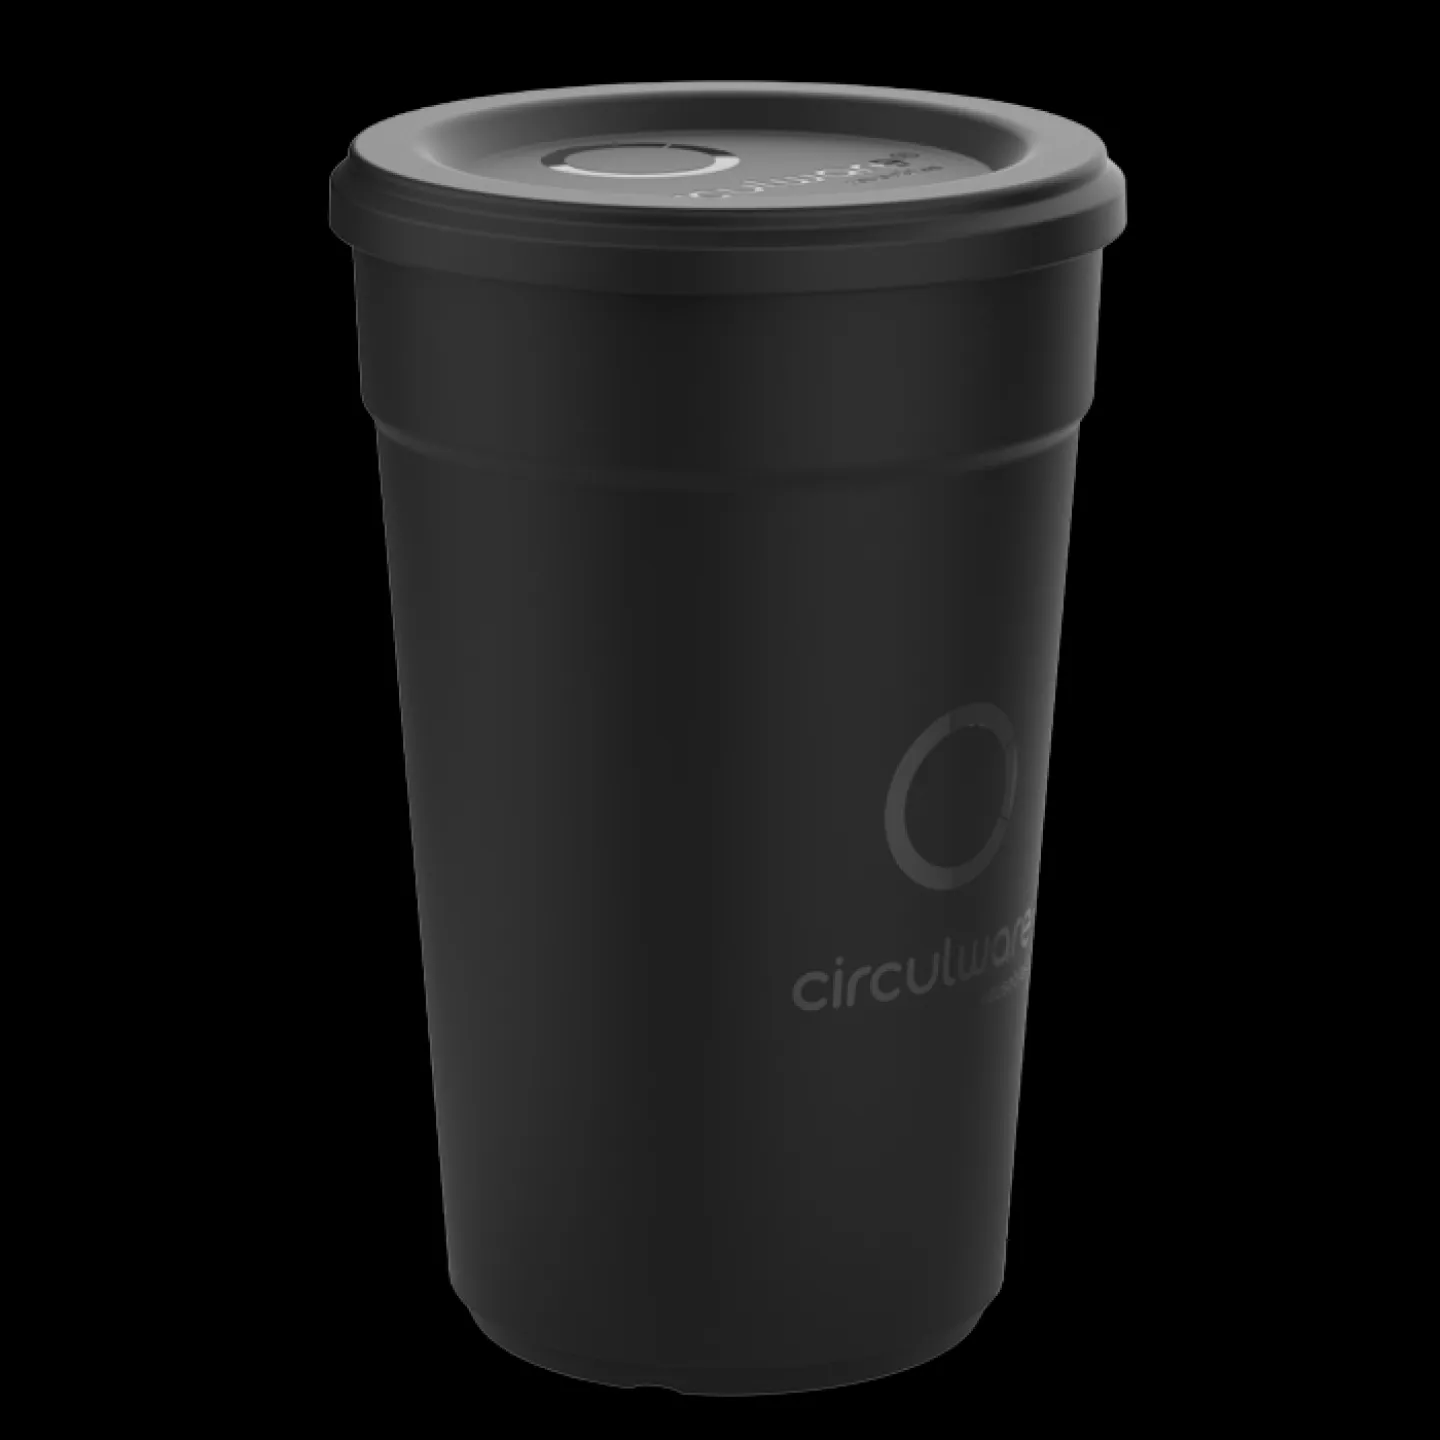 40cl recyclebare koffiebeker circulware zwart.